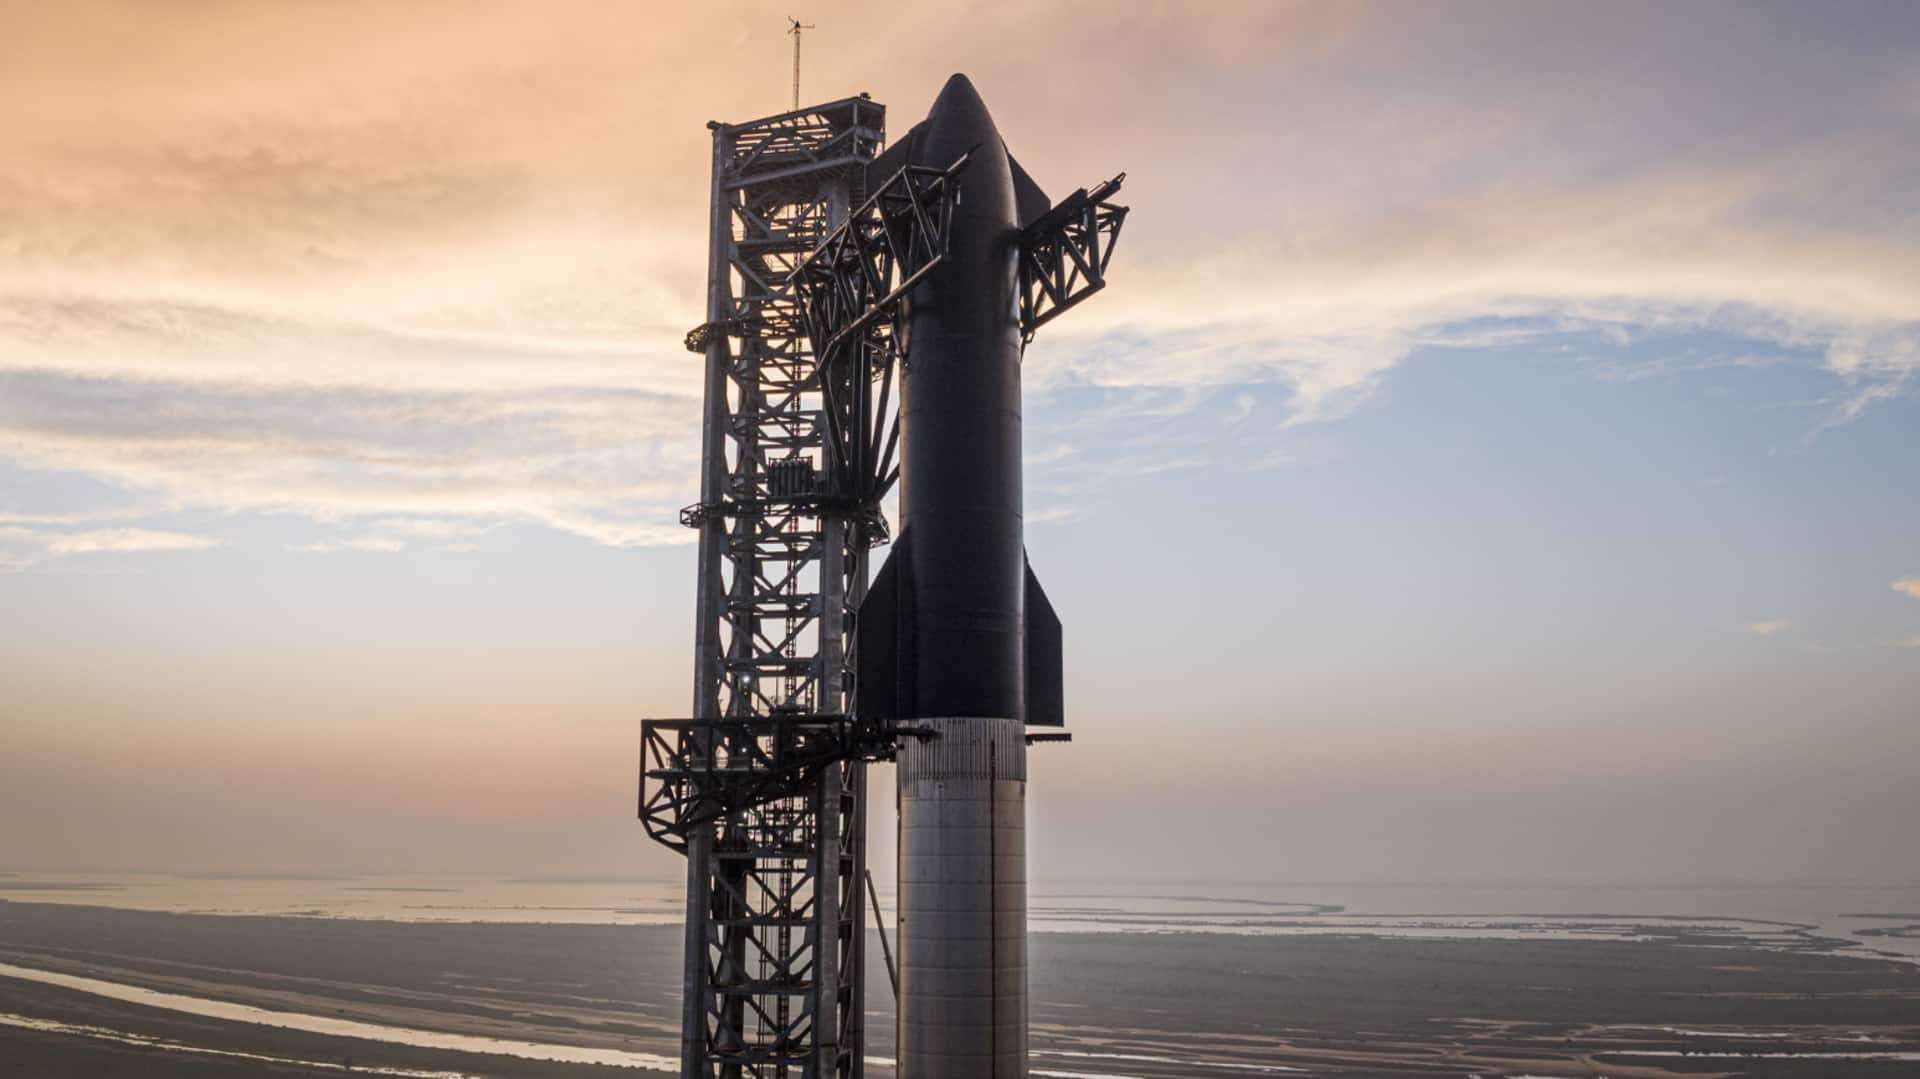 स्पेस-X के विश्व के सबसे बड़े रॉकेट स्टारशिप की लॉन्चिंग टली